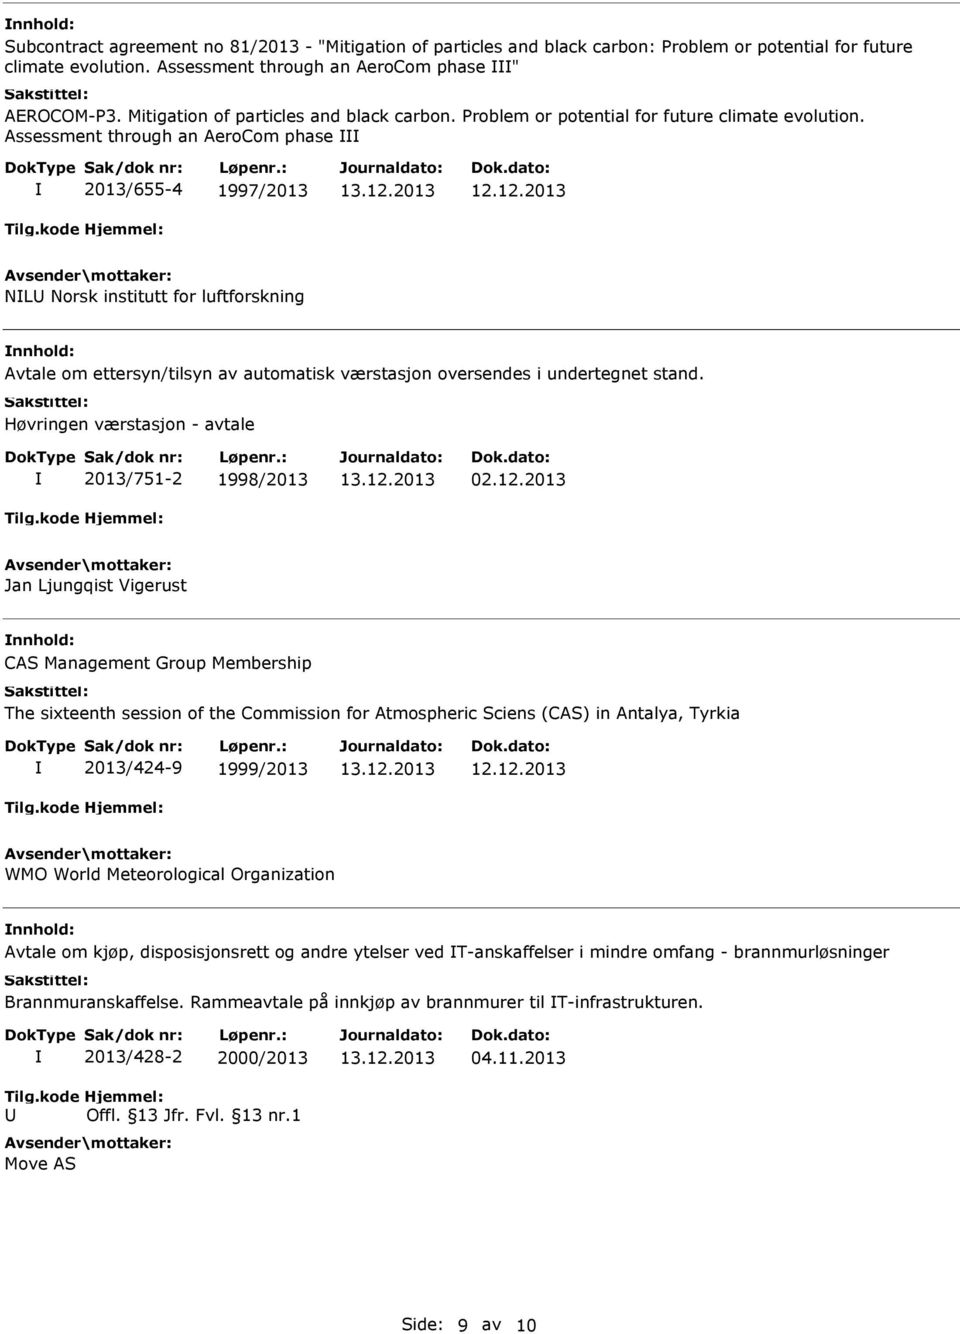 Assessment through an AeroCom phase 2013/655-4 1997/2013 NL Norsk institutt for luftforskning Avtale om ettersyn/tilsyn av automatisk værstasjon oversendes i undertegnet stand.